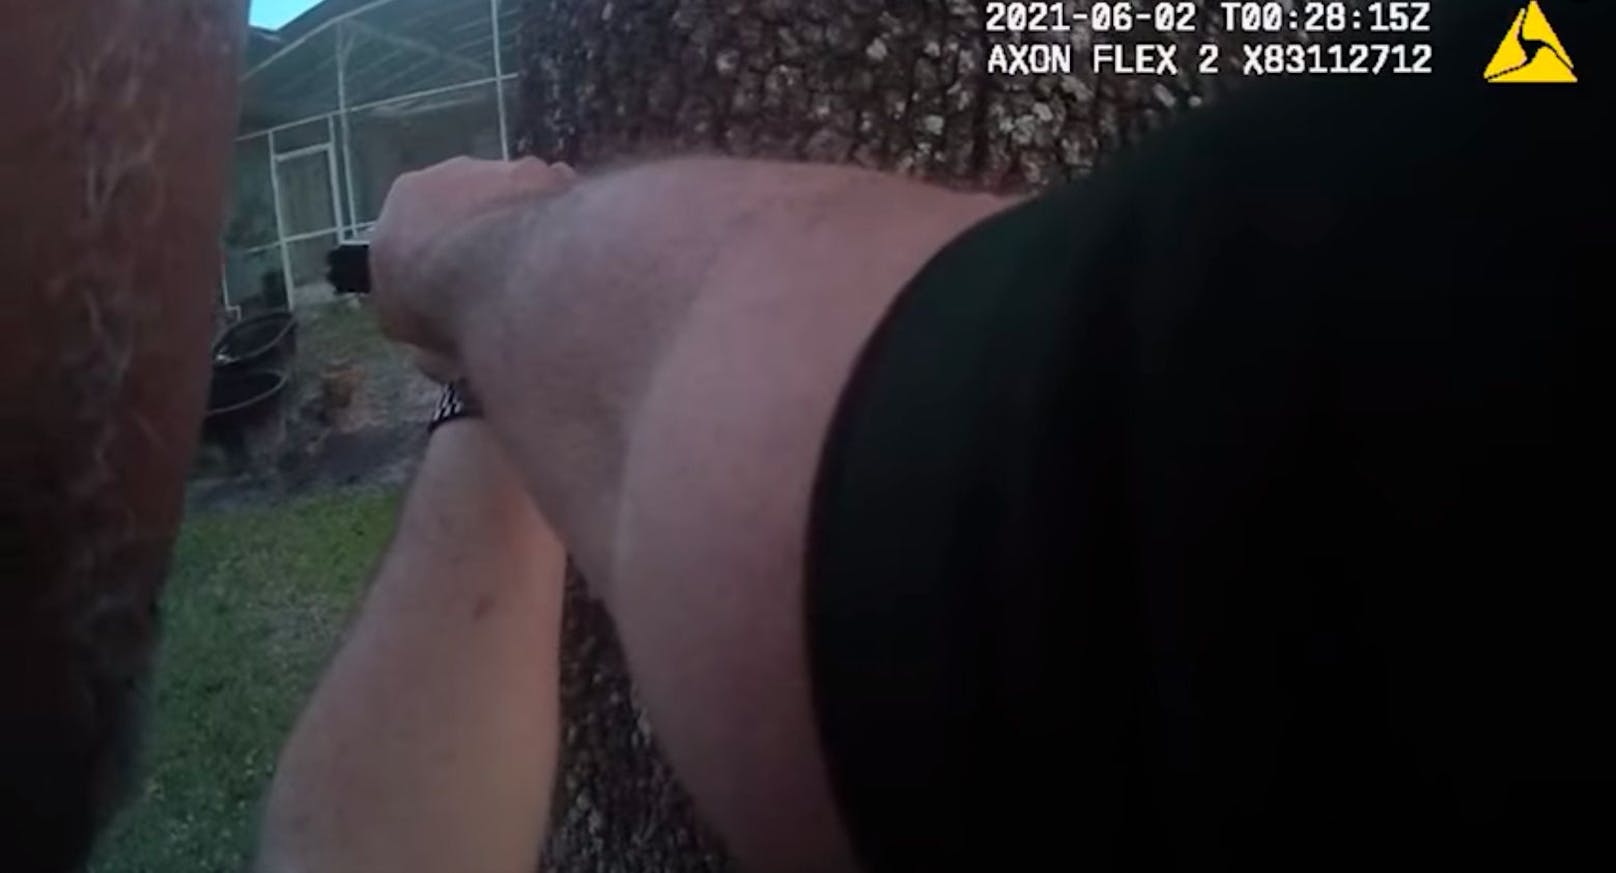 Die Bodycam-Aufnahmen einer der Beamten wurden vom Sheriff veröffentlicht.